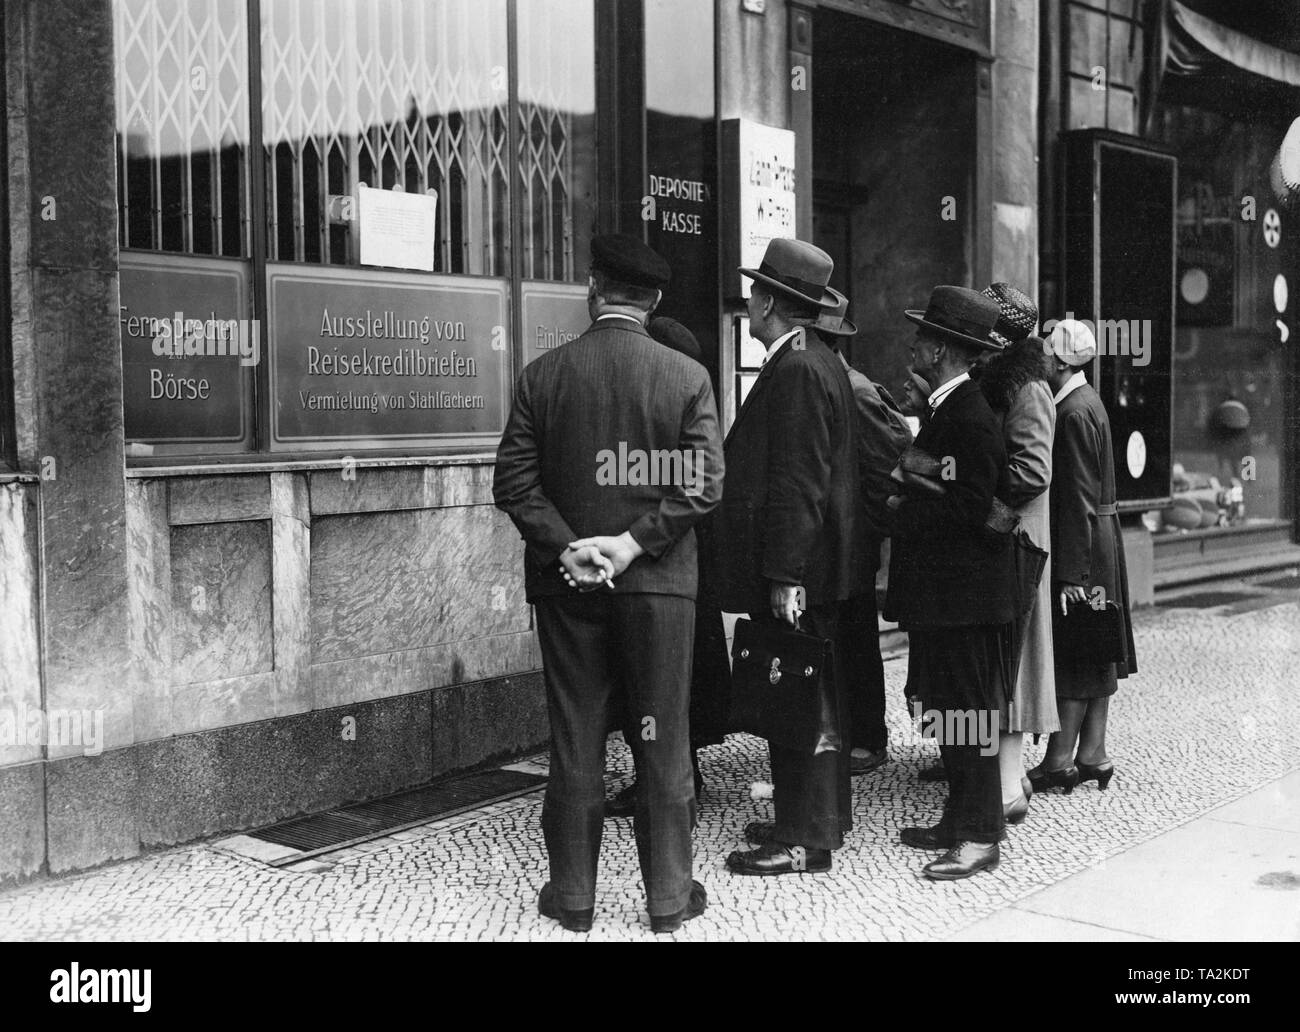 Geschlossenen Zweig der Danat-Bank am Belle-Alliance-Platz in Berlin. Die Darmstaedter und Nationalbank (danat-bank), der drittgrößte Währungsinstitution des Reiches, hatte den Zahlungsverkehr zu stoppen. Stockfoto